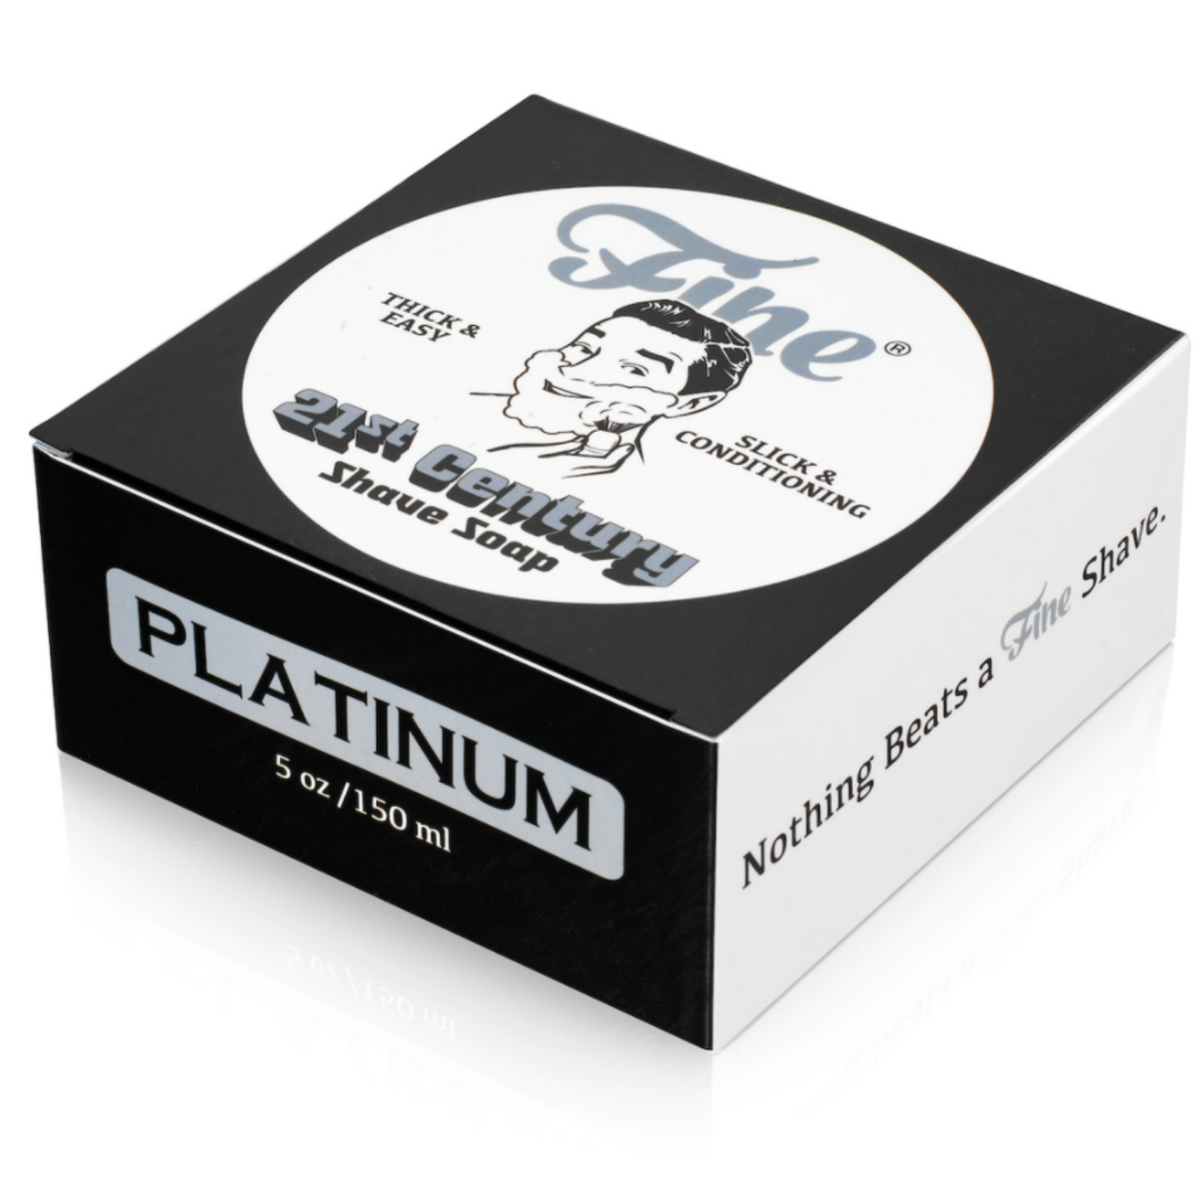 Fine Accoutrements Platinum Shaving Soap (5 oz) #10083302